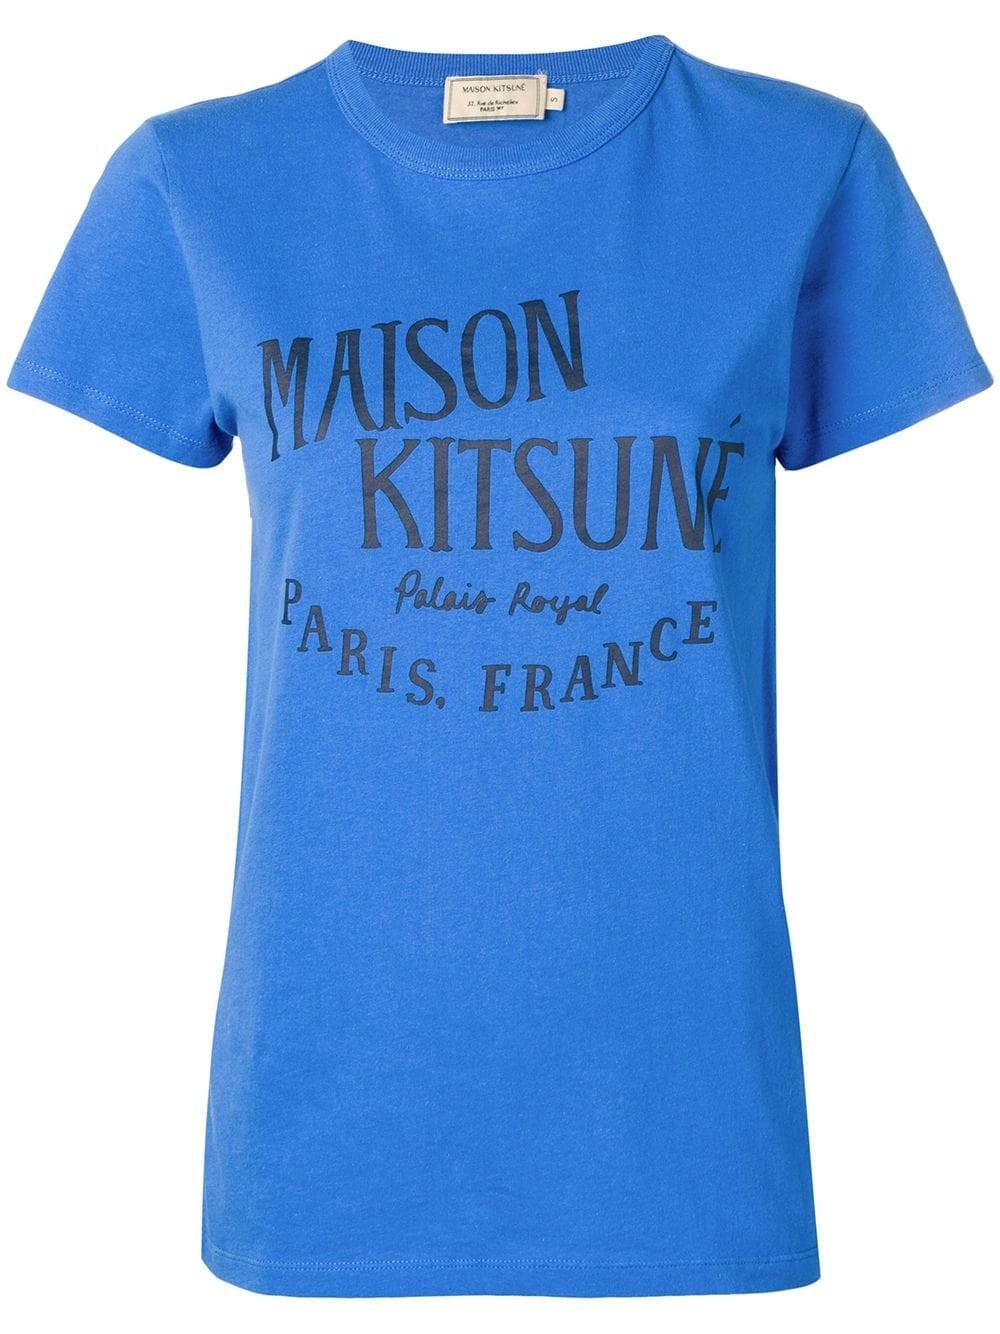 Lyst - Maison Kitsuné Logo Paris T-shirt in Blue - Save 5%